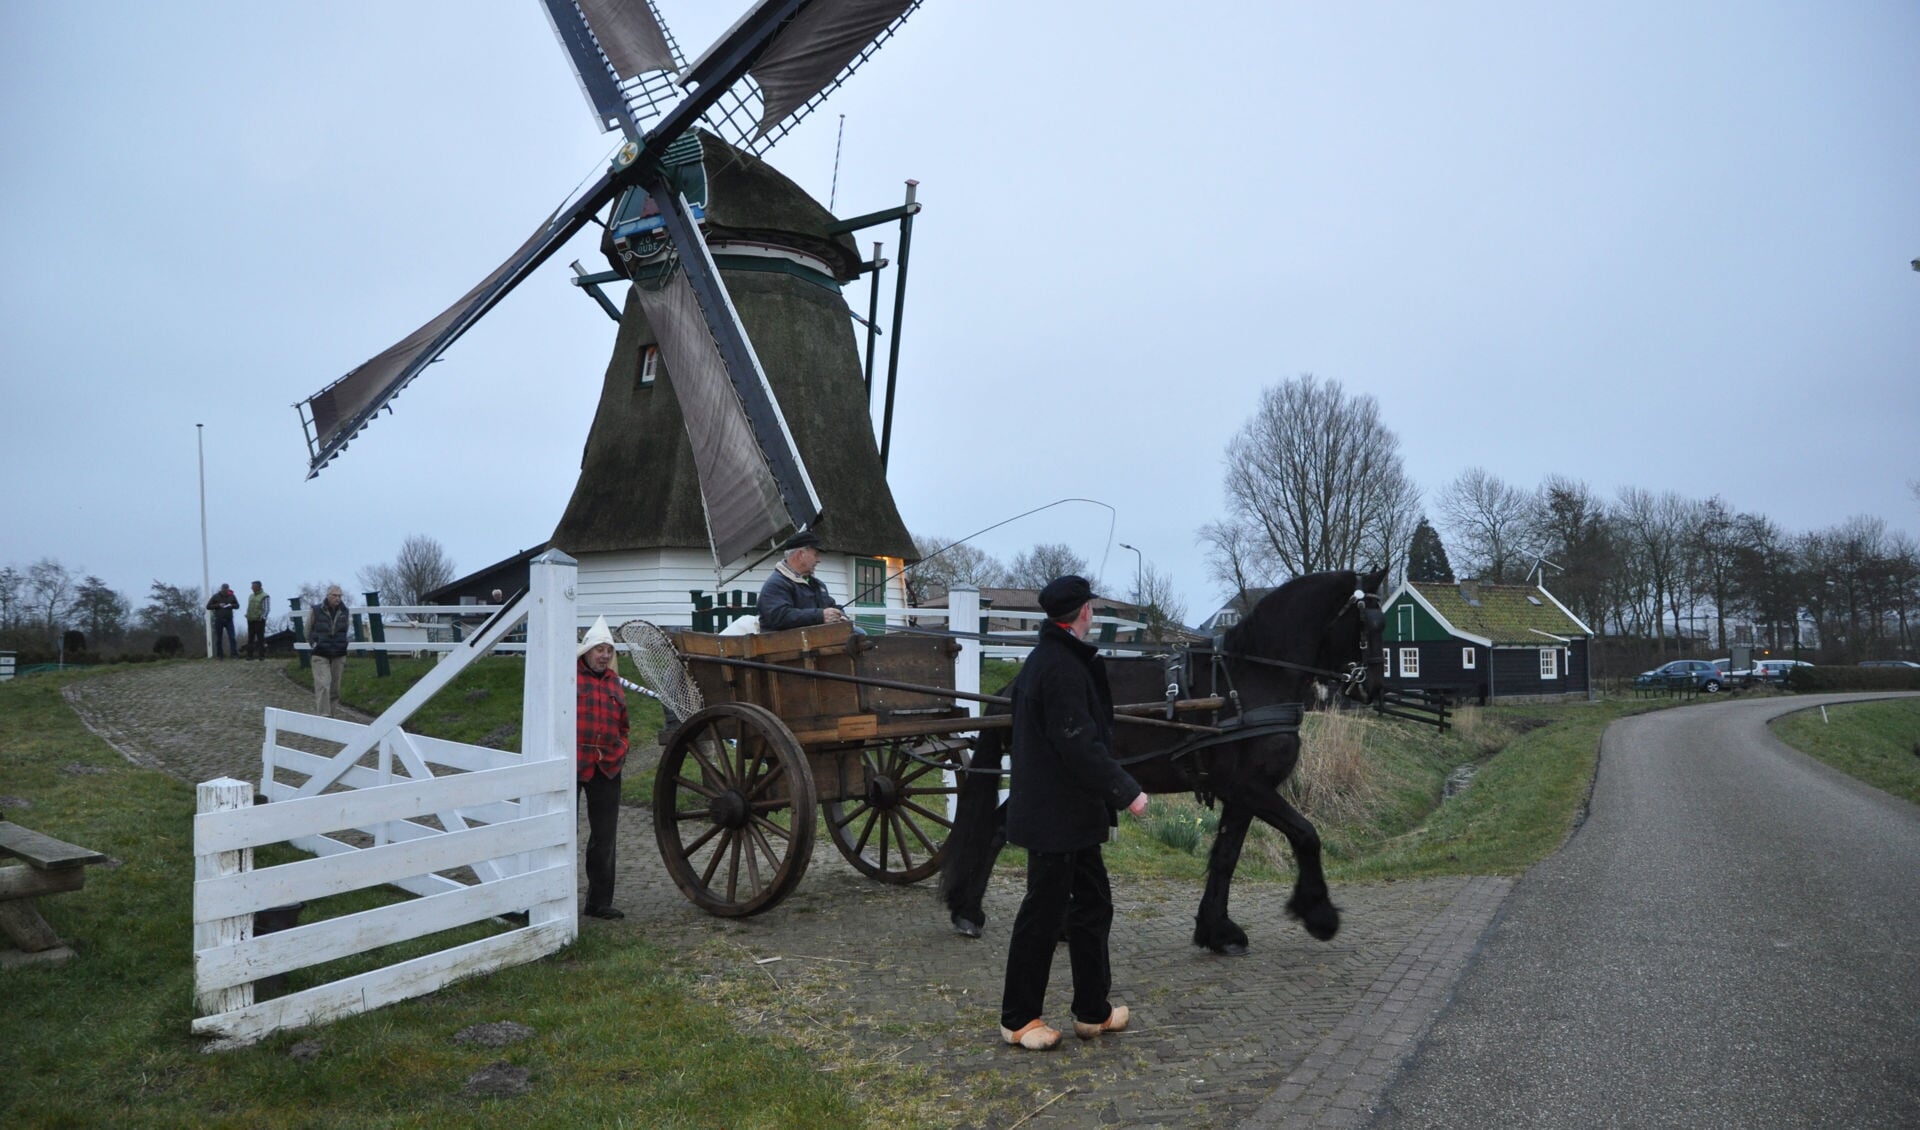 Het meel wordt opgehaald bij De Oude Knegt in Akersloot. De wagen voor het transport, is een replica van een schelpenkar. Voor de gelegenheid beschikbaar gesteld door Menno Twisk van het Strandvondstenmuseum in Castricum.

 